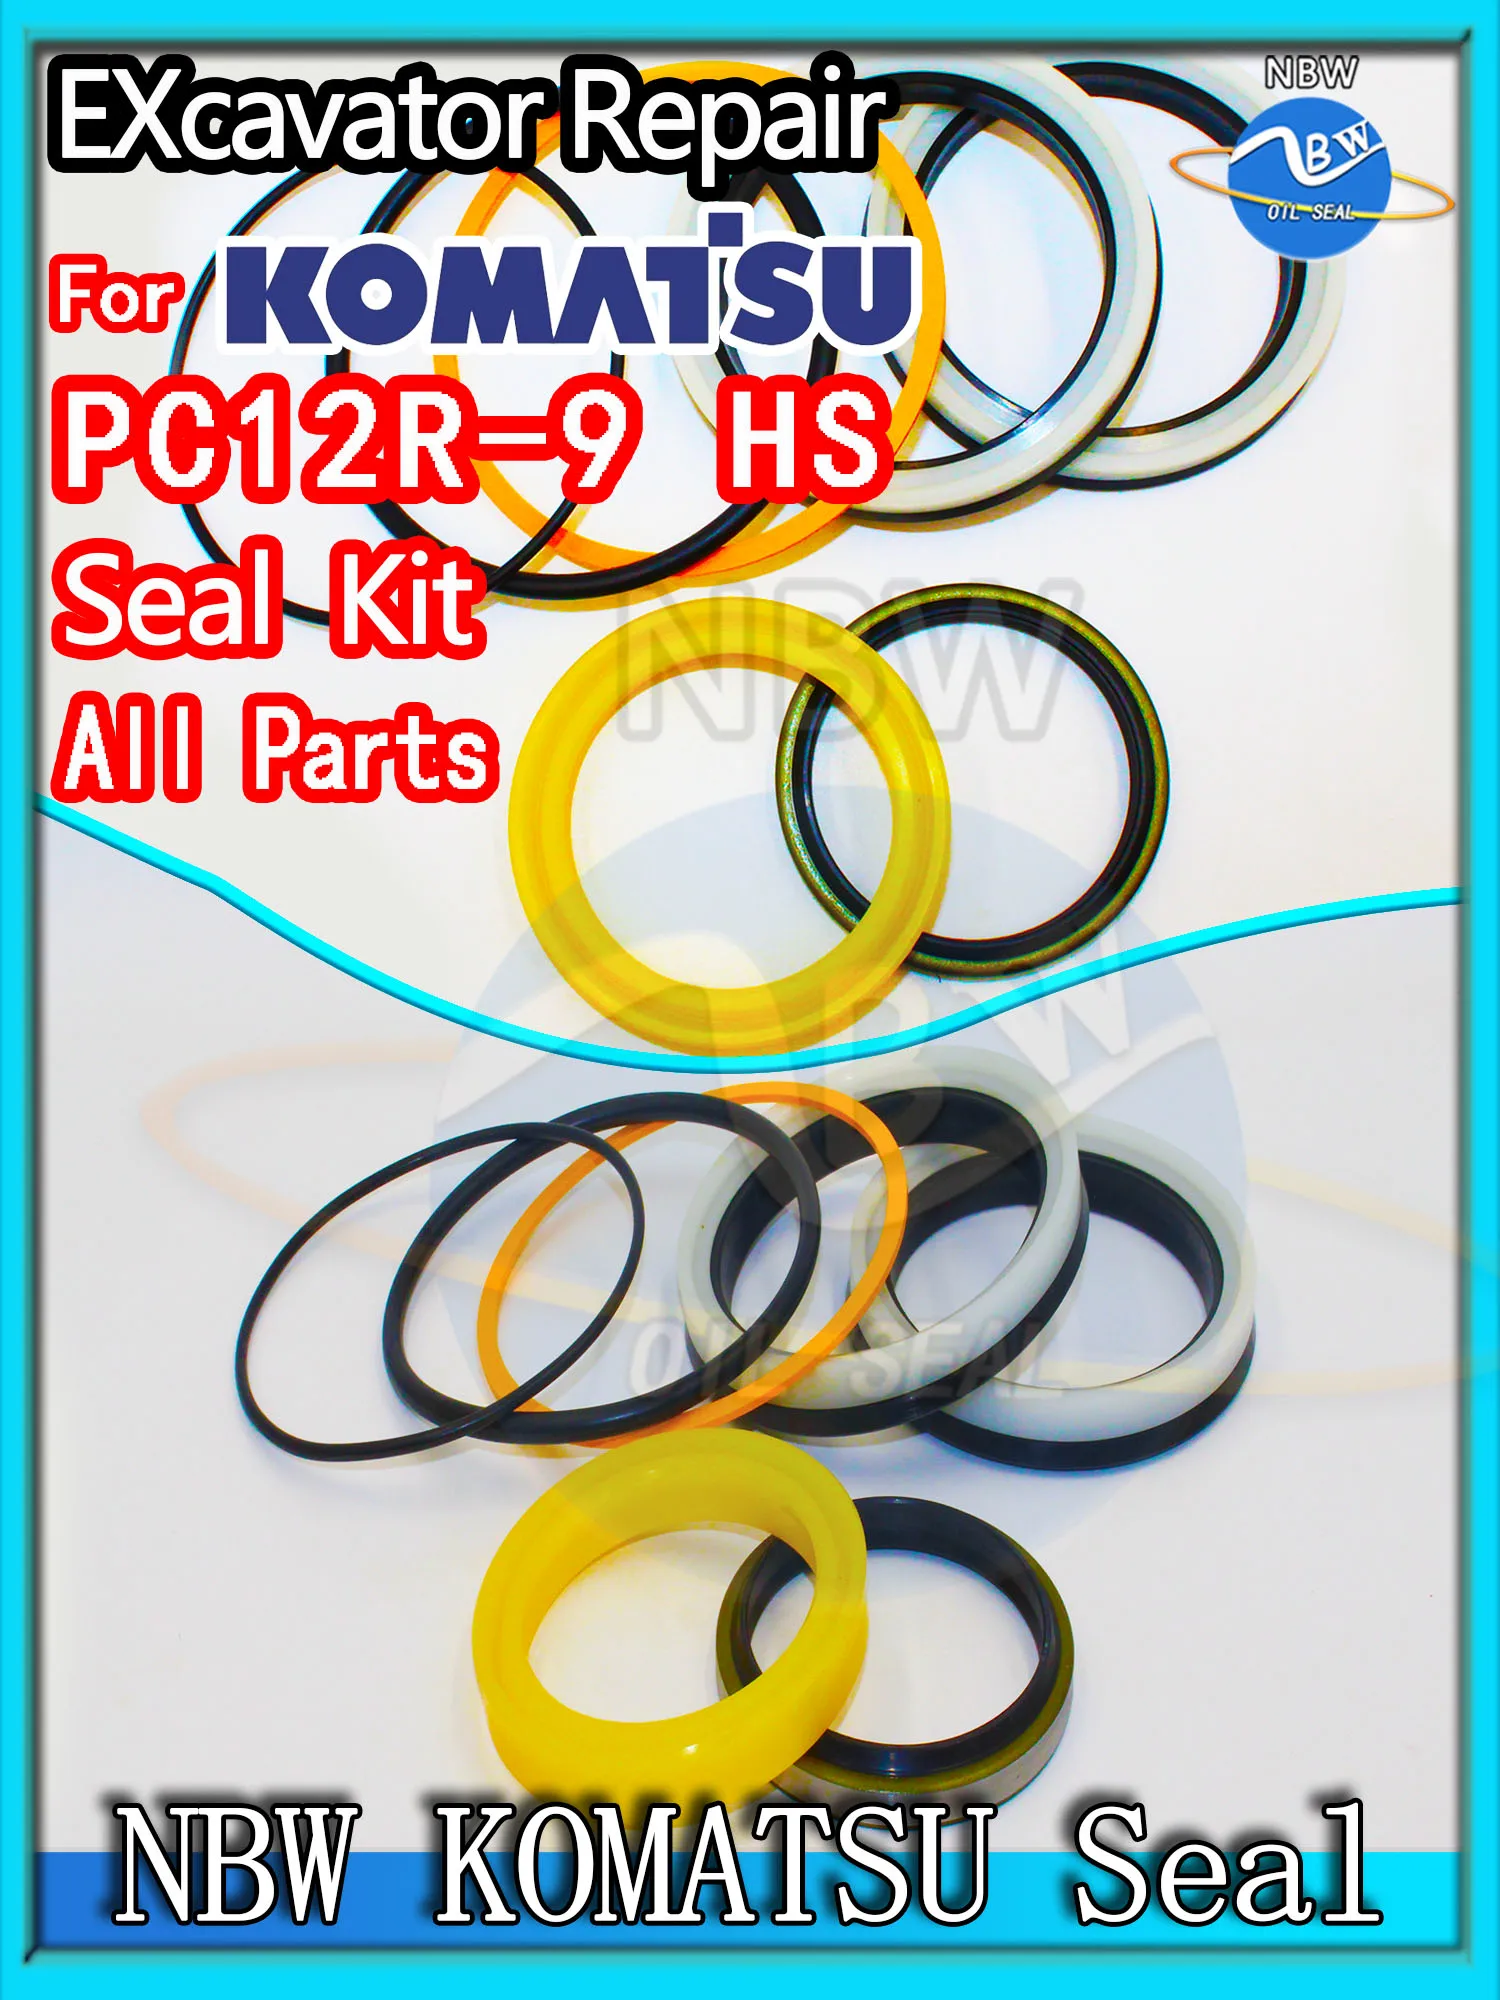 על KOMATSU PC12R-9 HS החופר שמן חותם ערכת איכות גבוהה תיקון PC12R 9 HS Spovel פטיש בנייה סט כלי Pack אבק כבד - 0